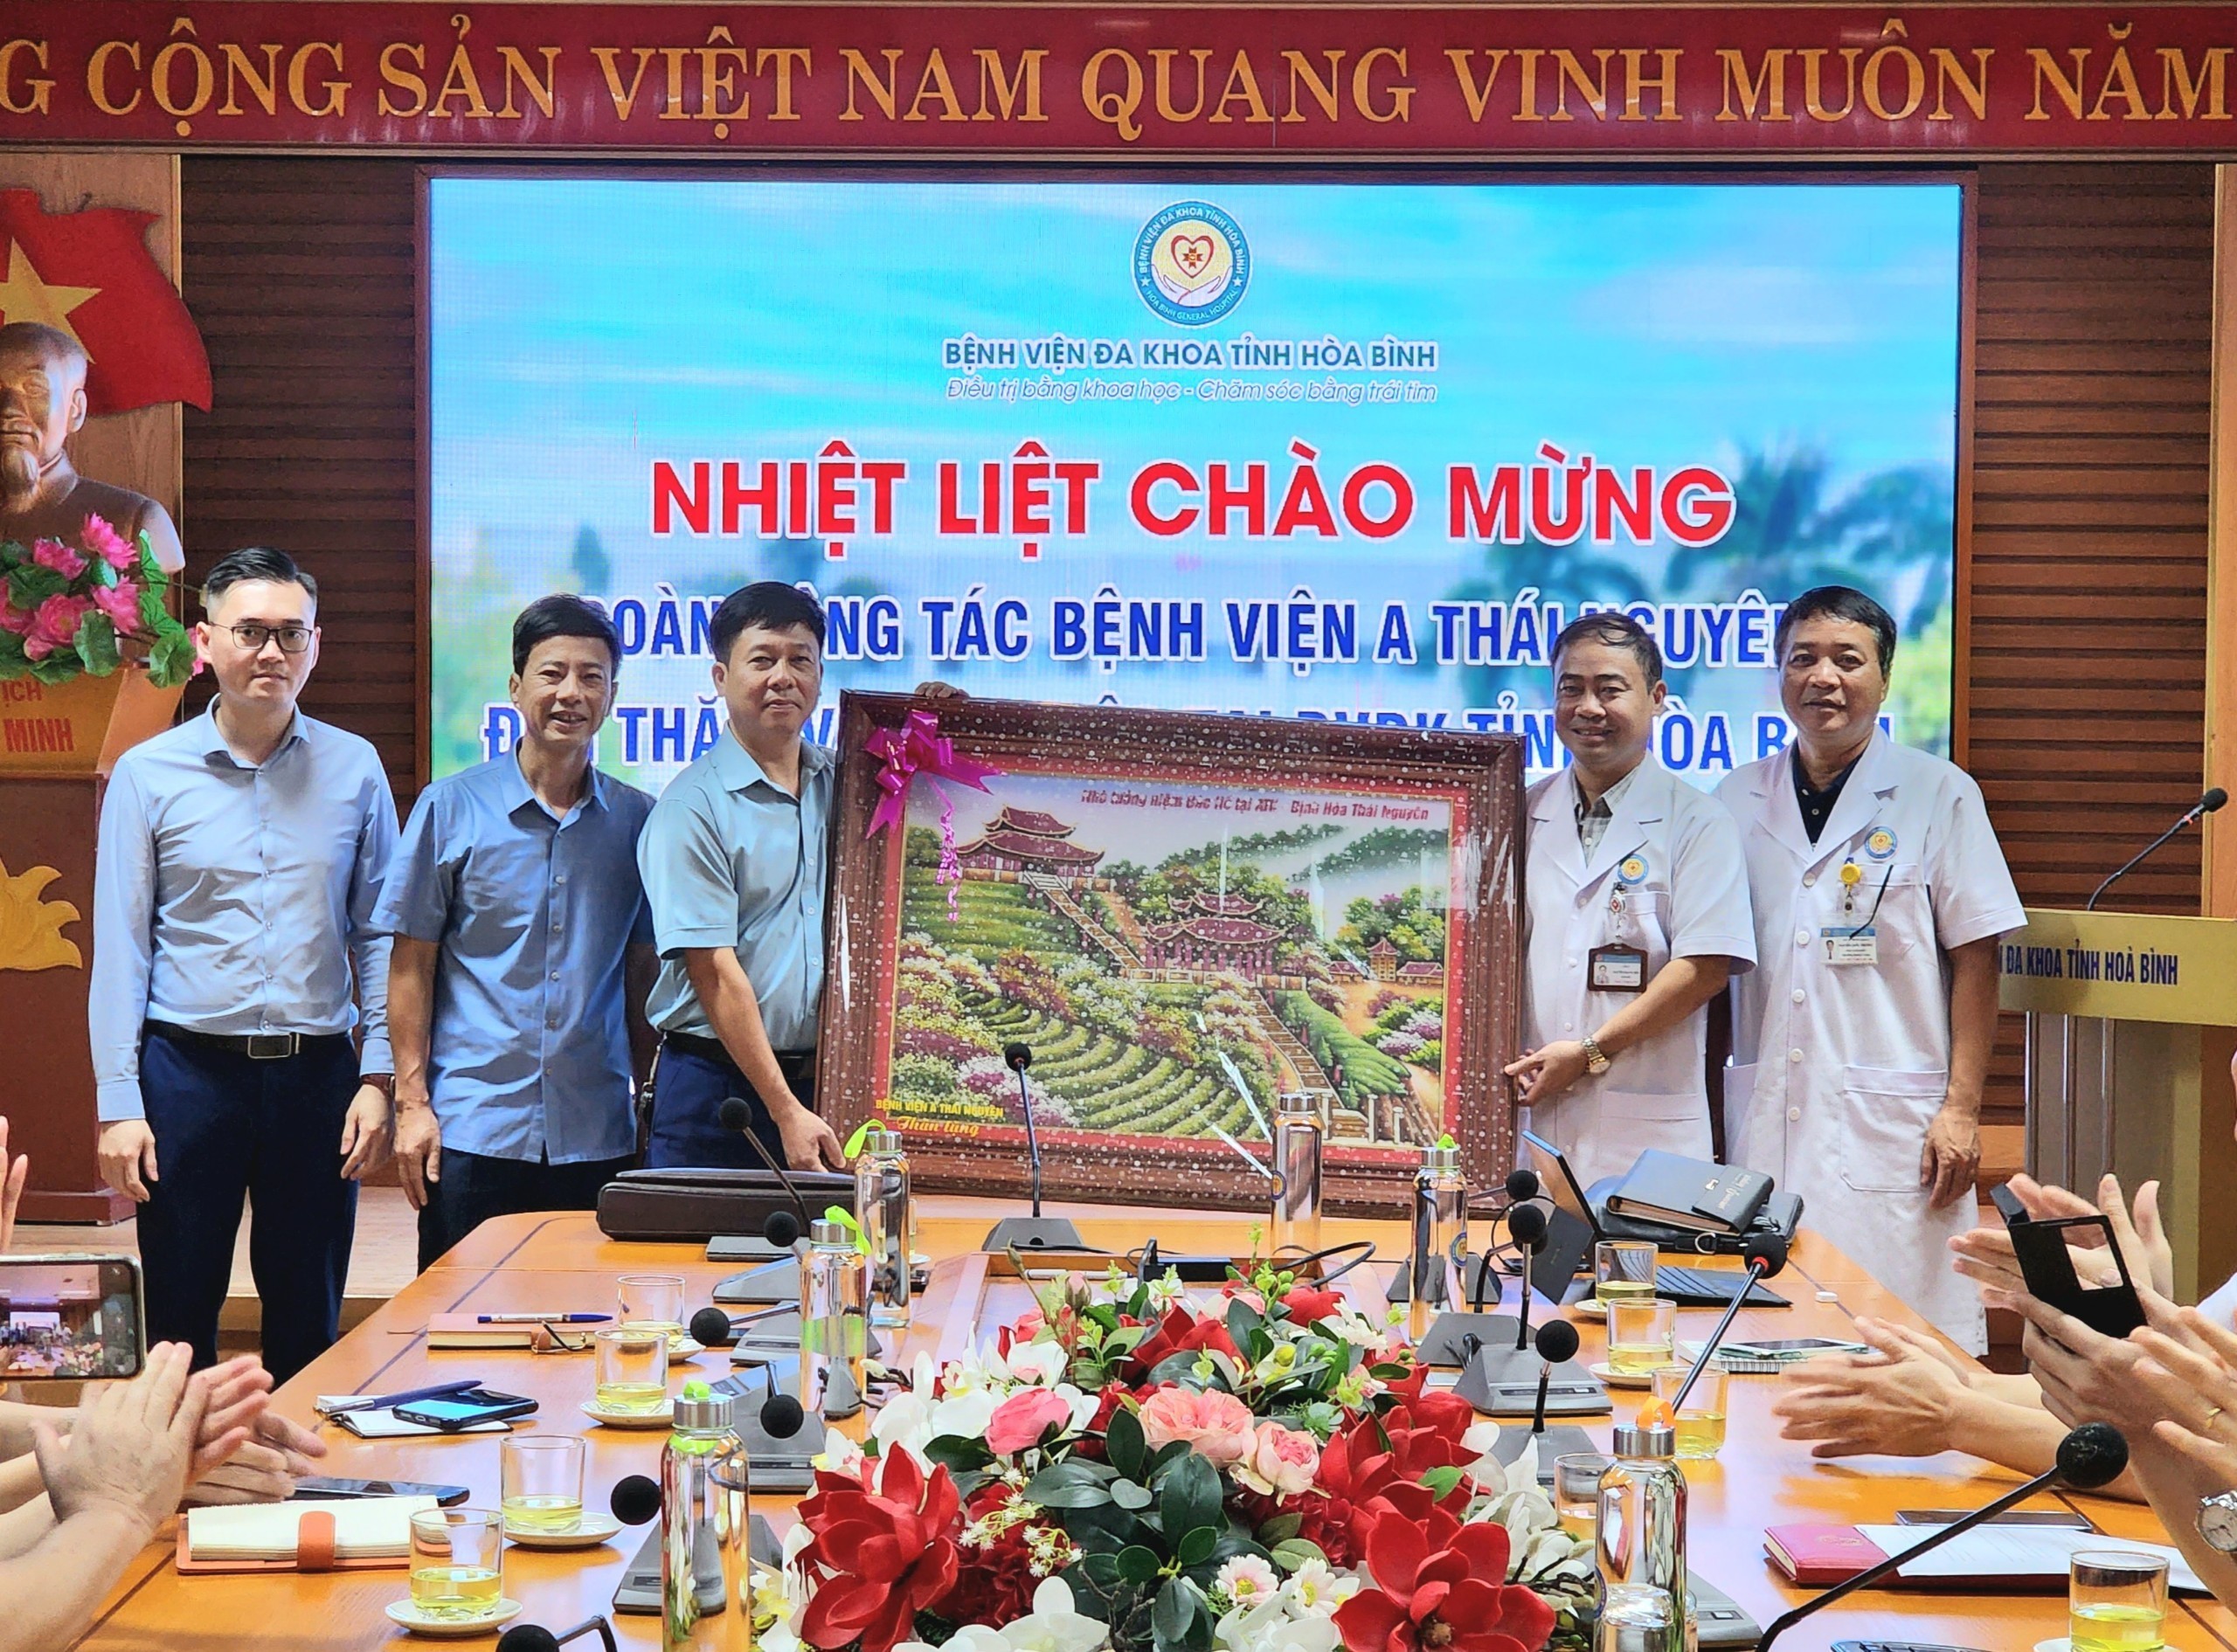  Bệnh viện A Thái Nguyên thăm và làm việc tại Bệnh viện Đa khoa tỉnh Hoà Bình